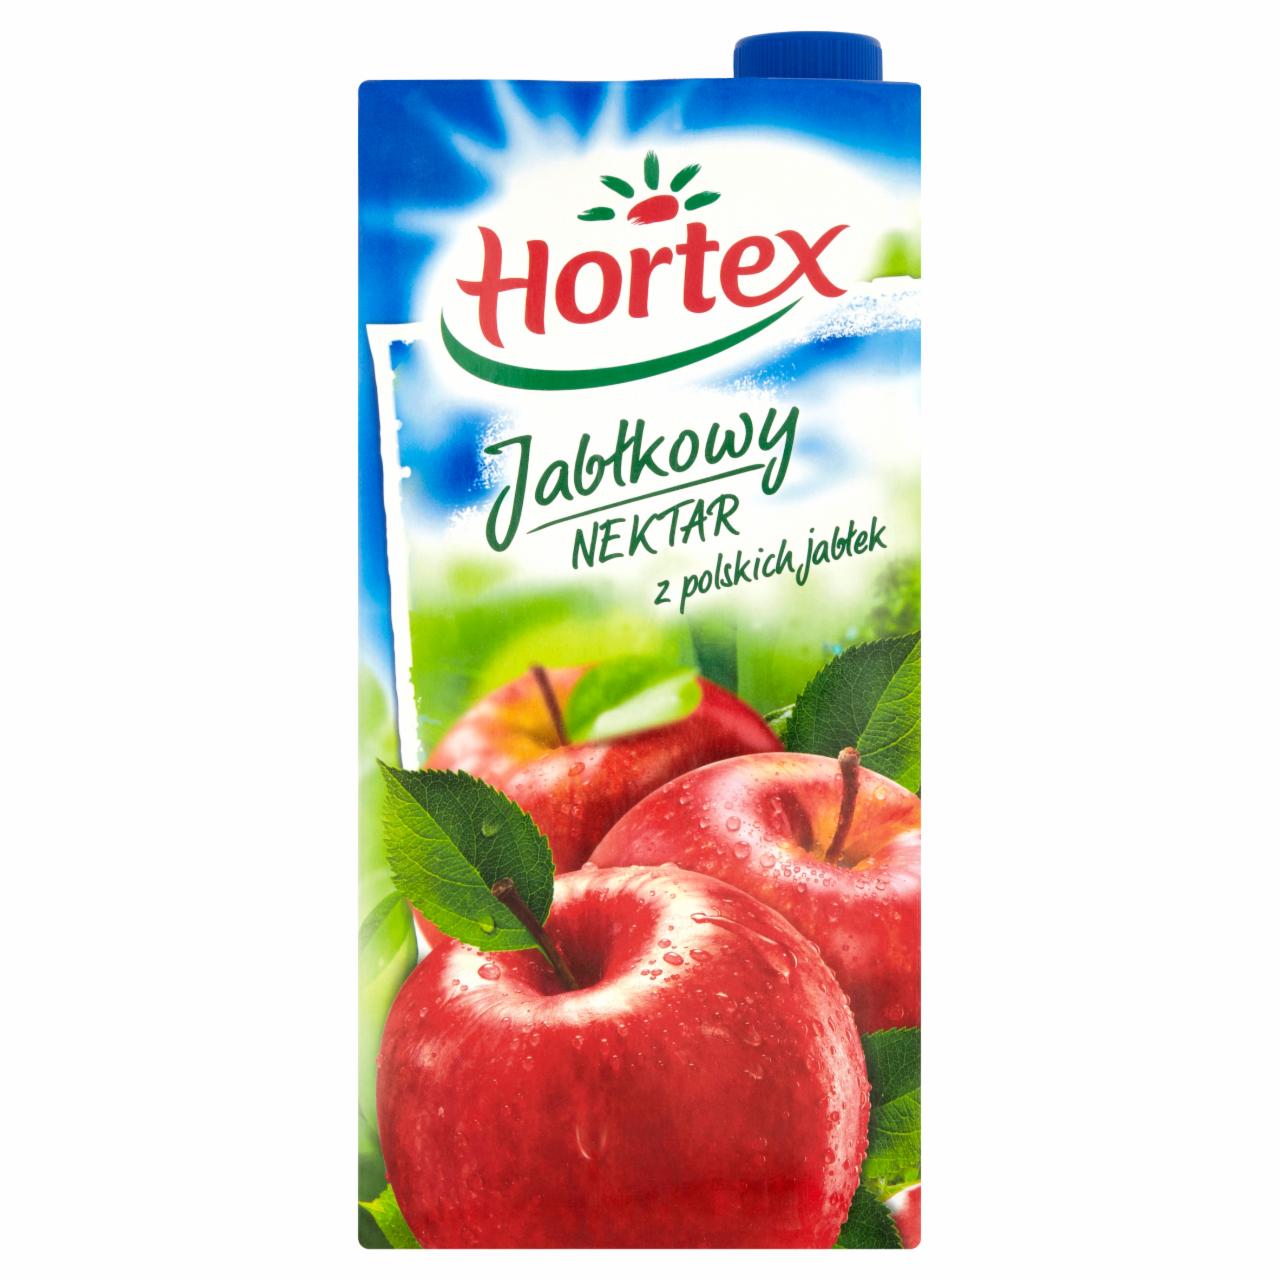 Zdjęcia - Hortex Jabłkowy Nektar z polskich jabłek 2 l